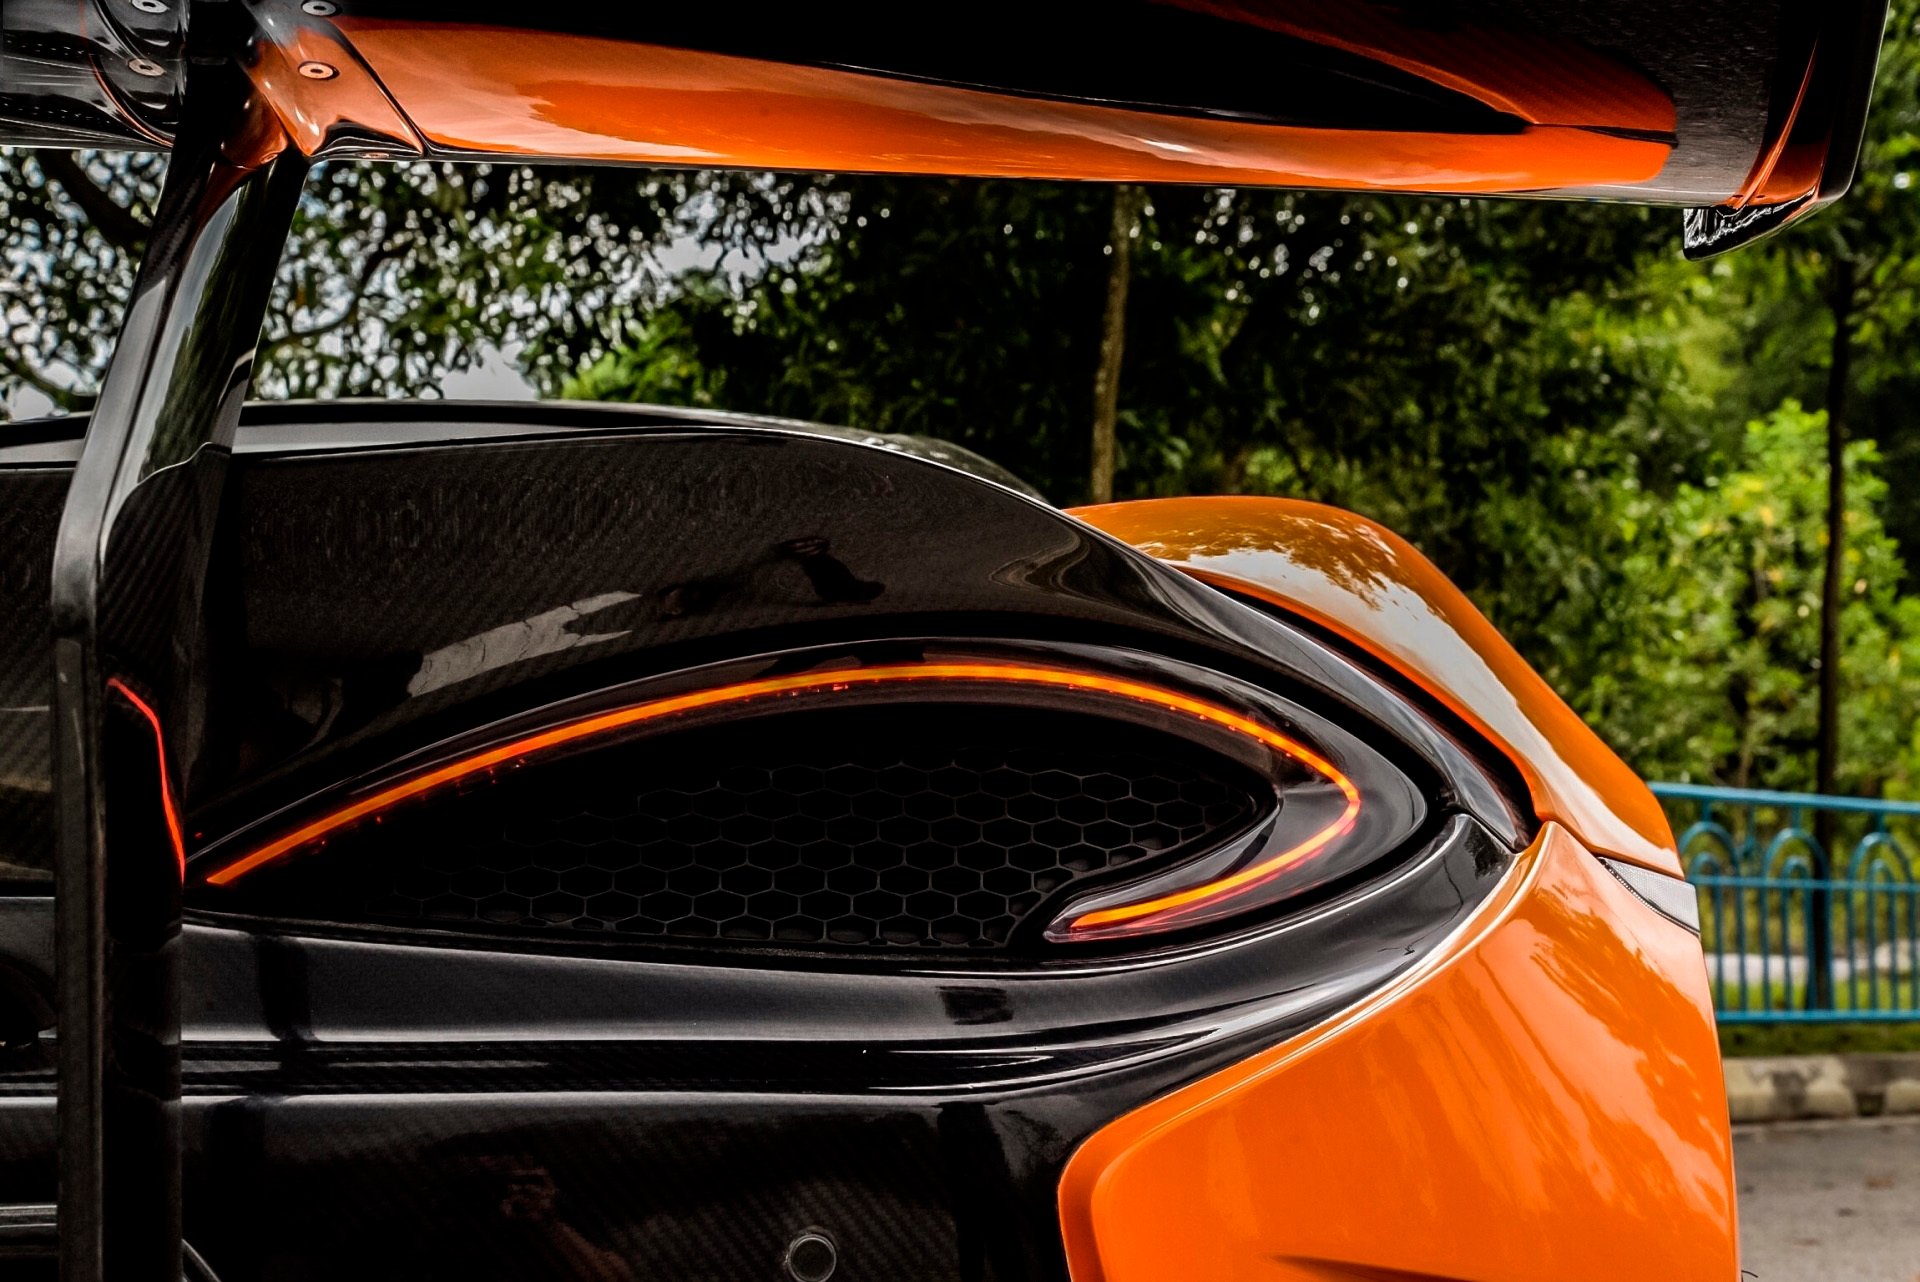 Vorsteiner Nero body kit for McLaren 570S latest model